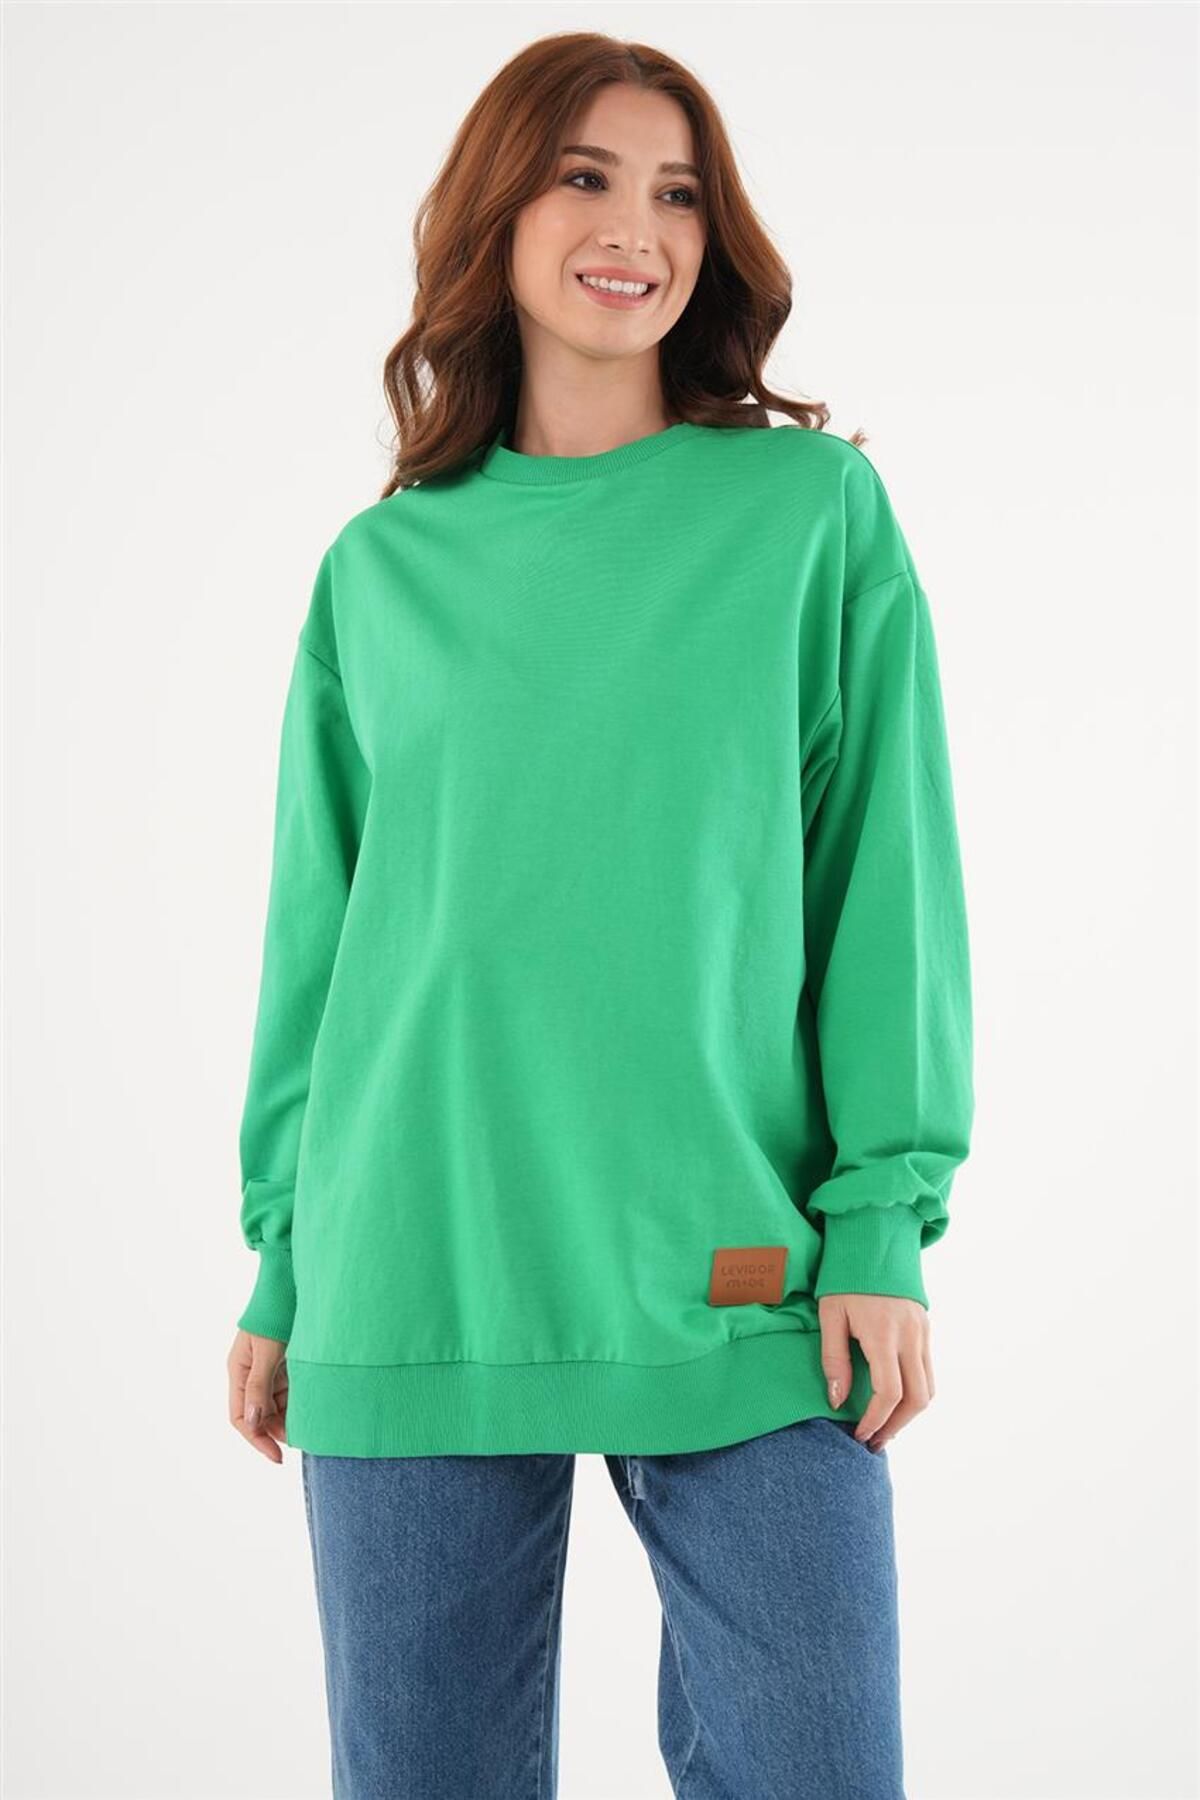 Levidor Basic Benetton Yeşili Sweatshirt